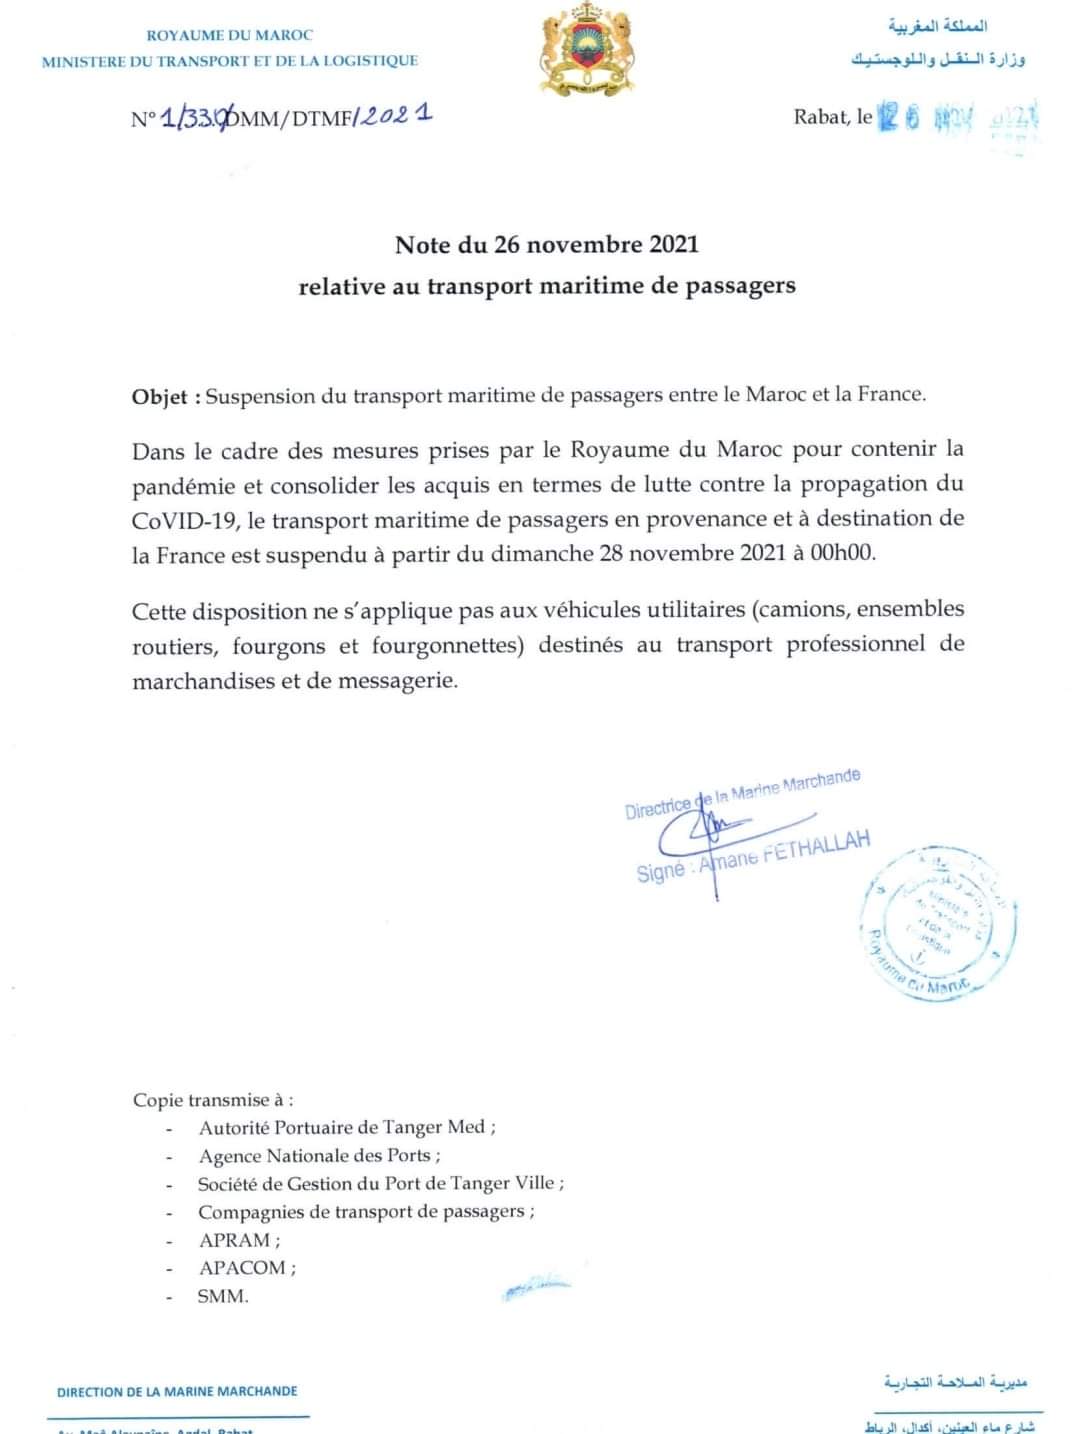 Suspension du transport maritime passagers entre le Maroc et la France